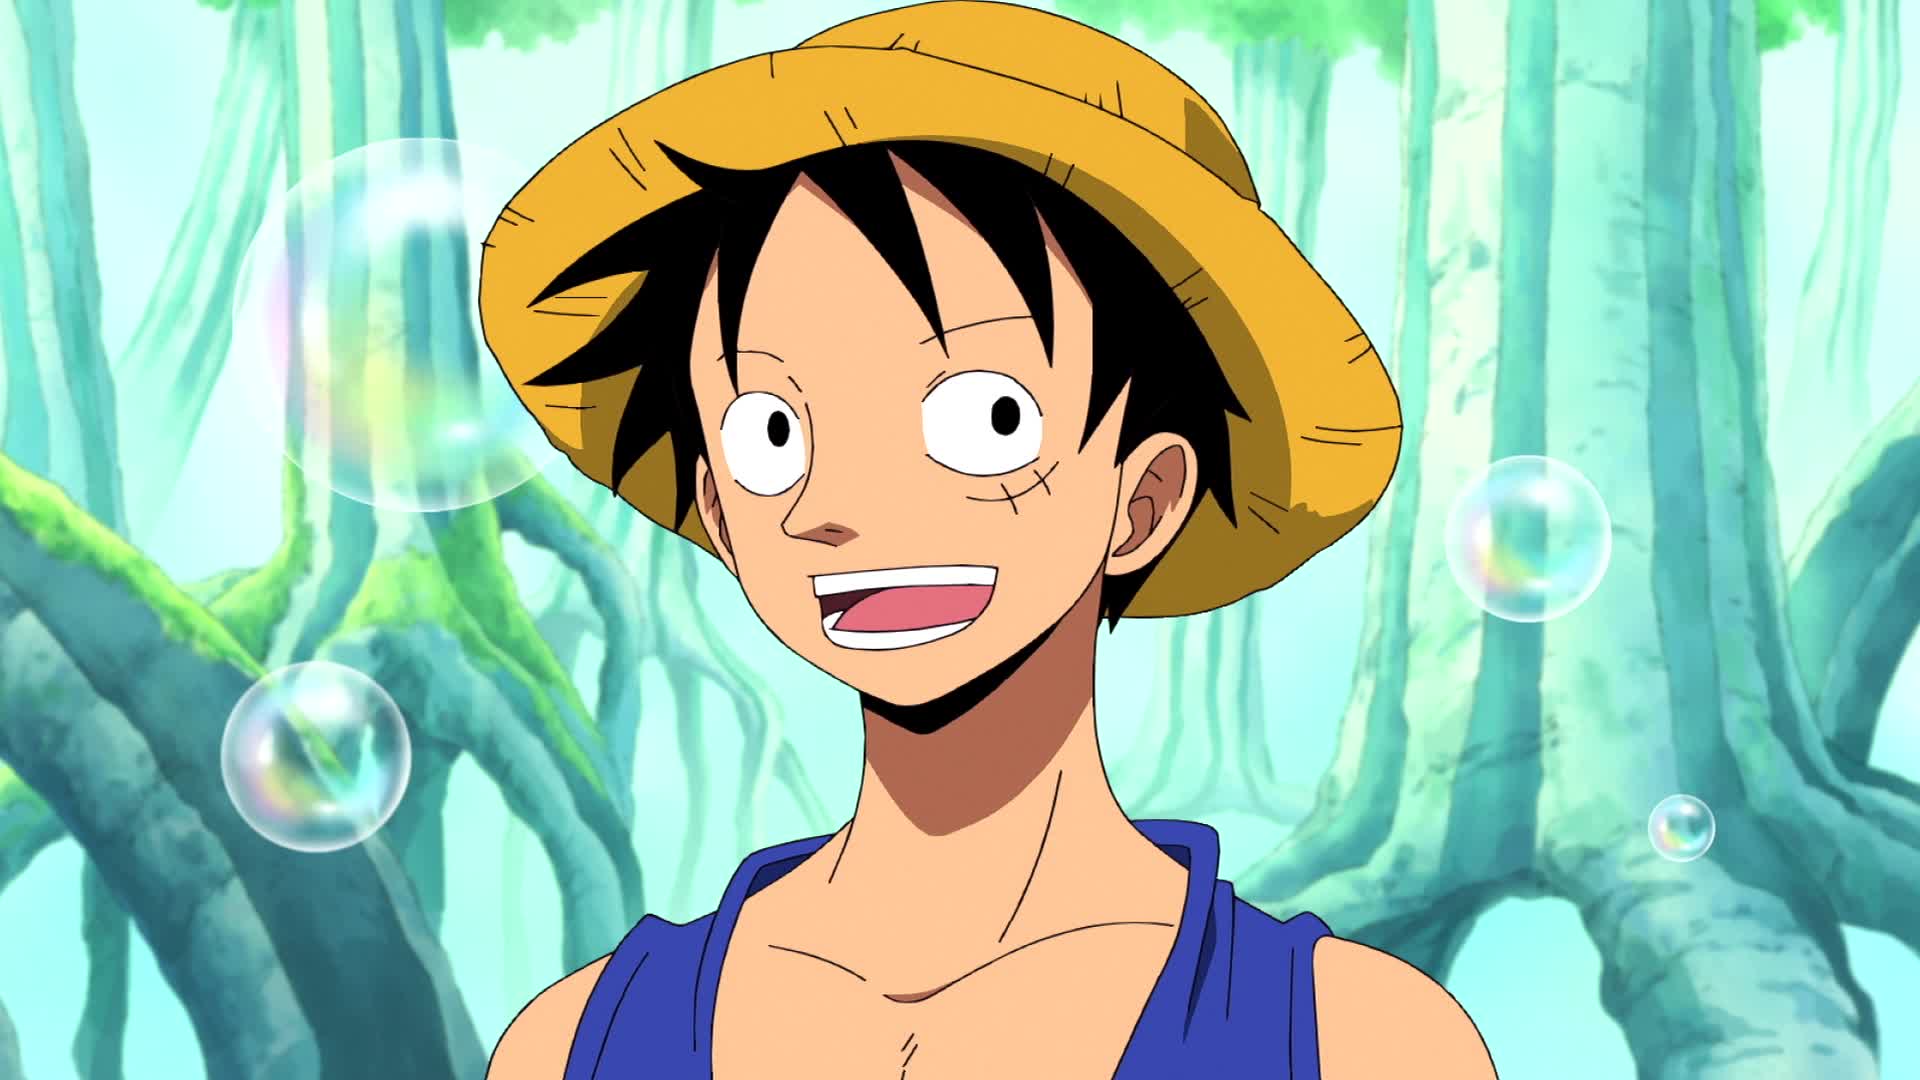 One Piece: Arco de Sabaody finalmente ganha data de estreia na Netflix -  Notícias Geek - BCharts Fórum